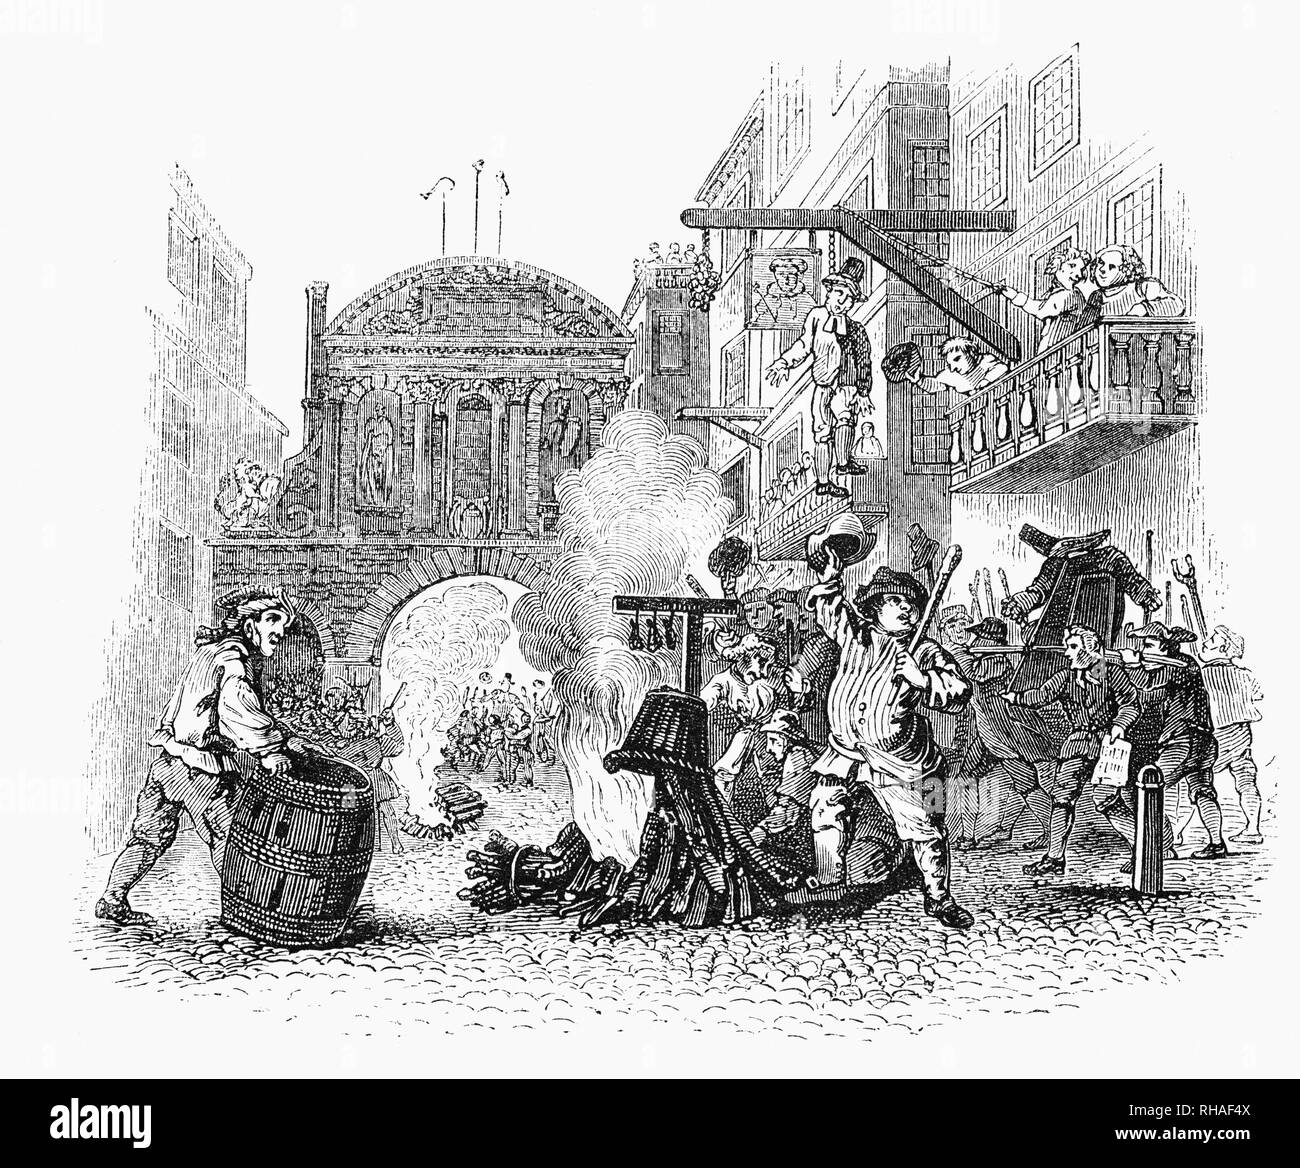 Eine riotous Szene in der Straße neben Temple Bar, die westliche Grenze der Stadt London, mit dem Mob hängen und brennen Vertretungen der Mitglieder der Rumpfparlament aus einer 1726 Radierung und Stich von William Hogarth Stockfoto